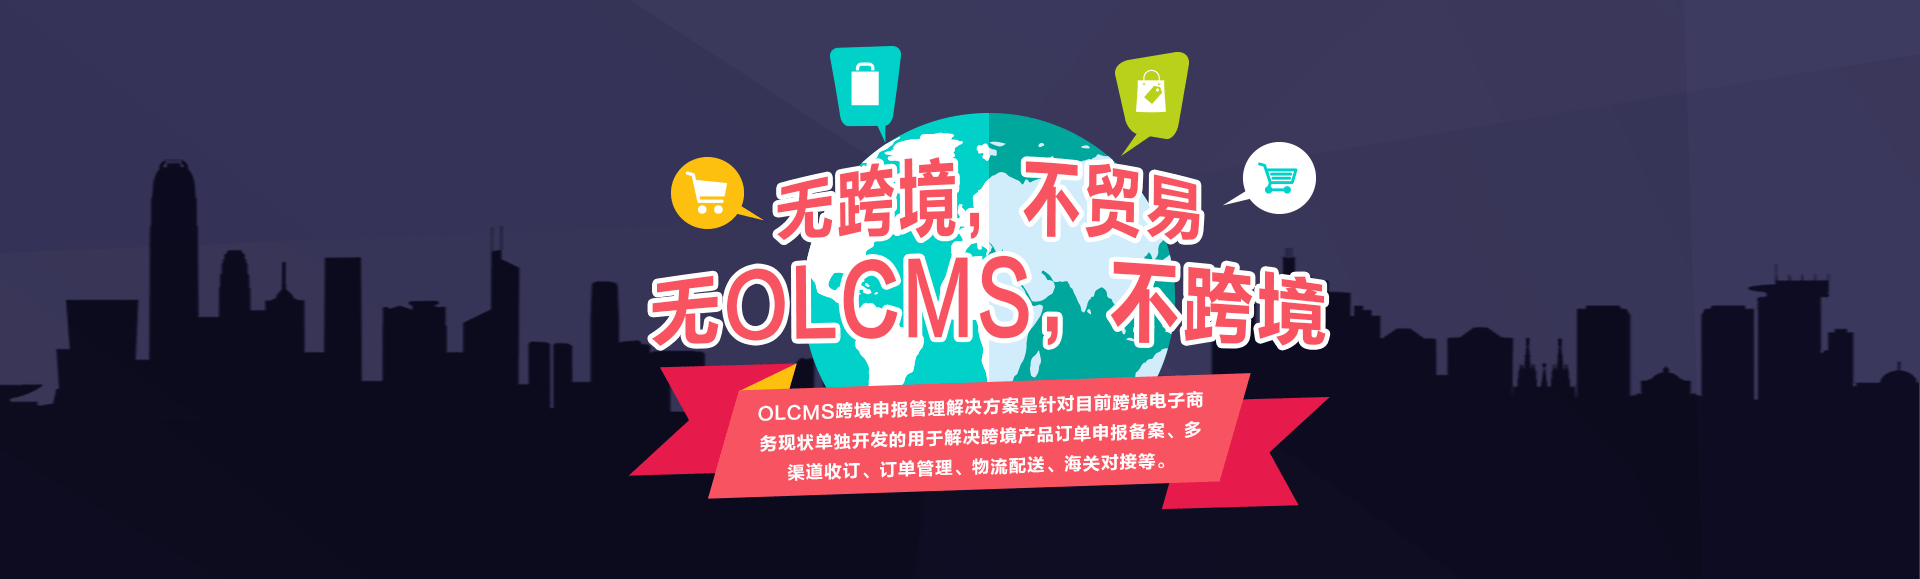 OLCMS跨境申报管理解决方案是针对目前跨境电子商务现状单独开发的用于解决跨境产品订单申报备案、多渠道收订、订单管理、物流配送、海关对接等